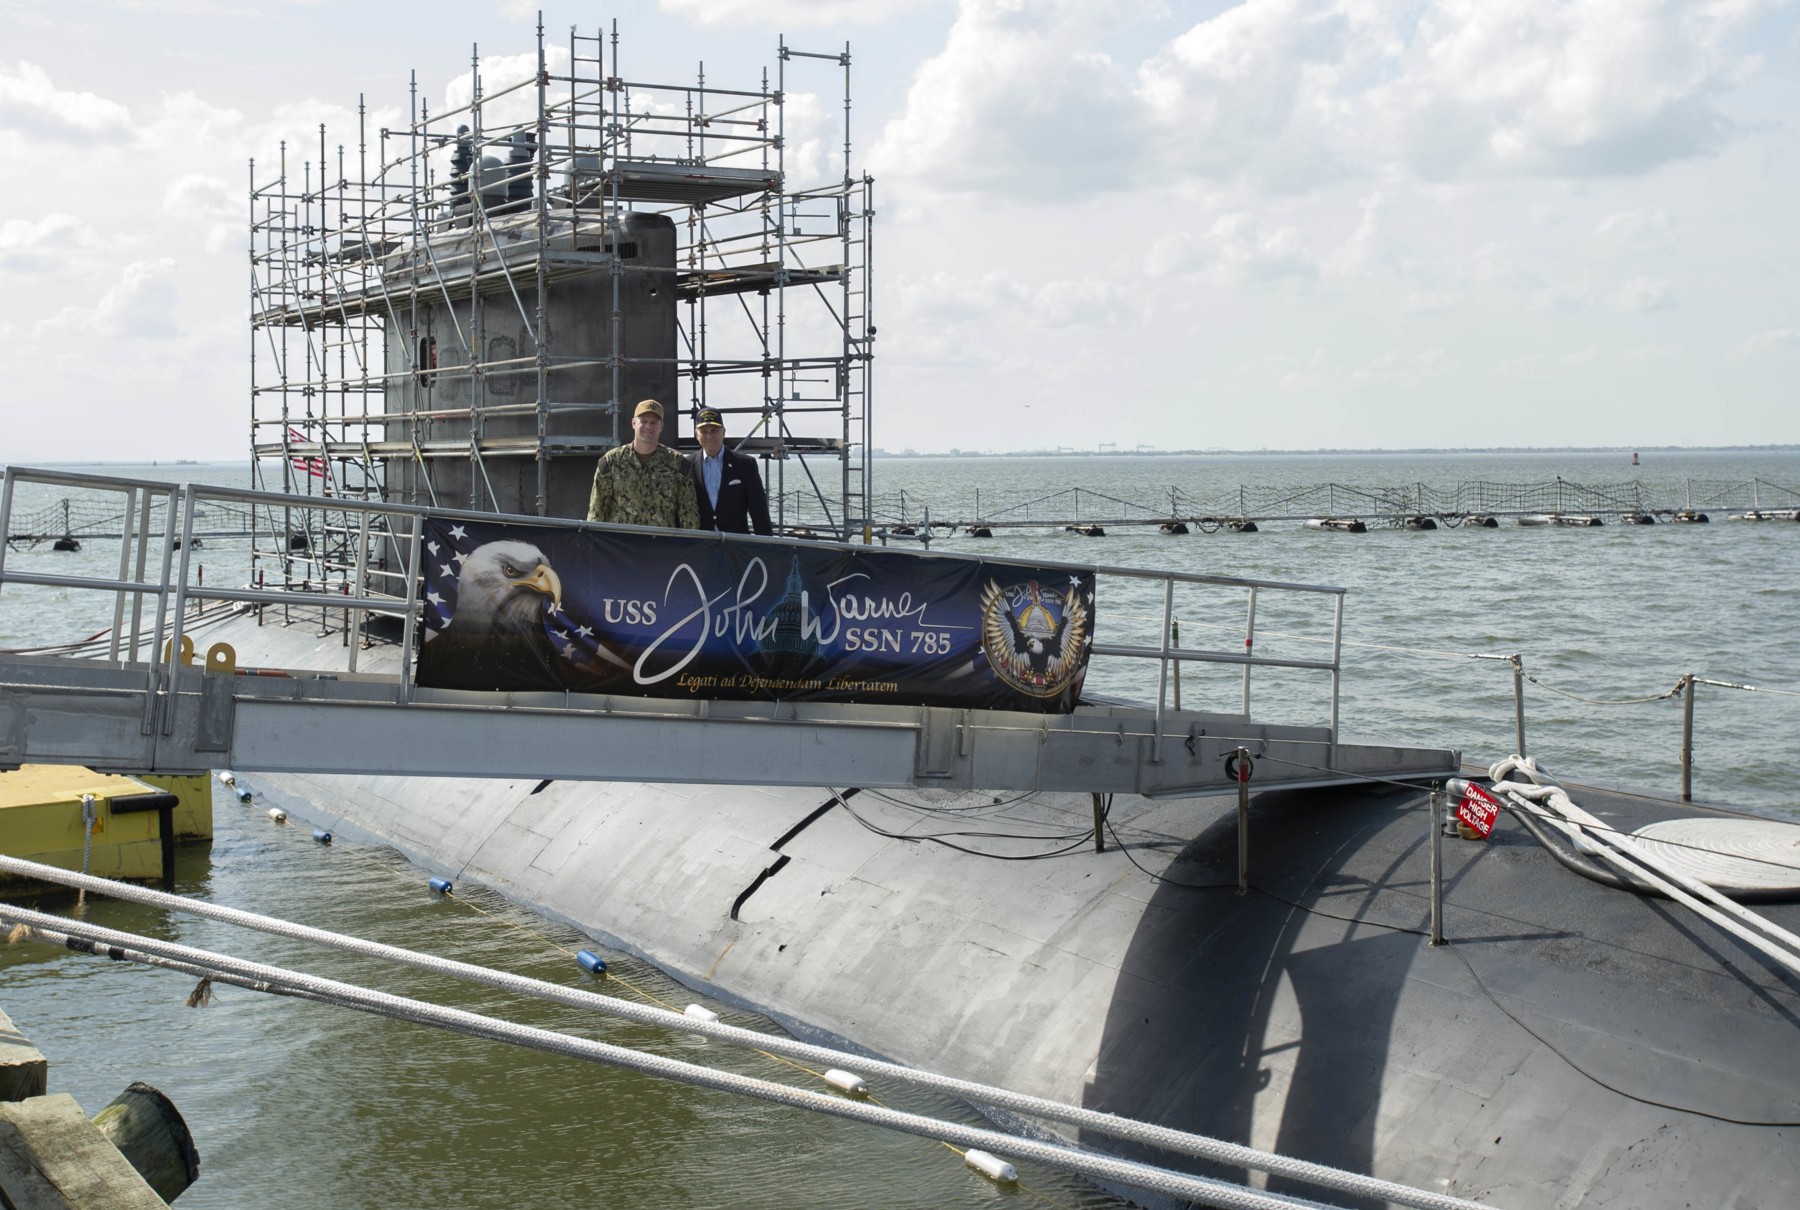 ssn-785 uss john warner virginia class attack submarine us navy 32